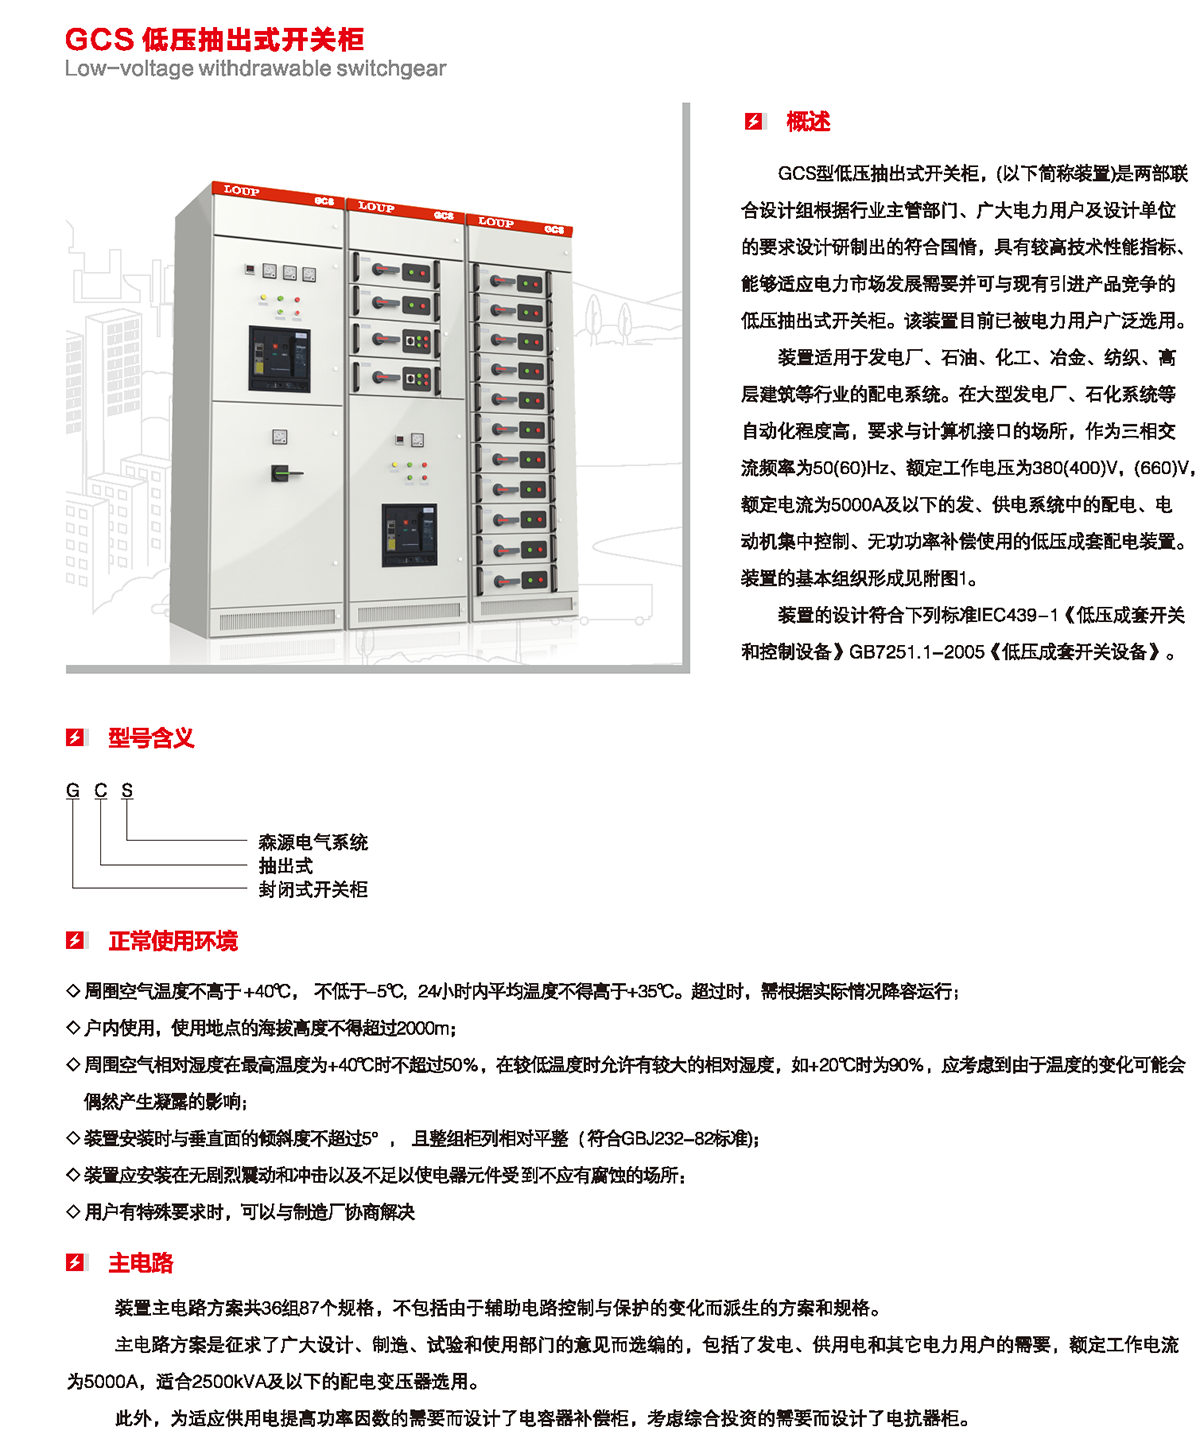 GCS低压抽出式开关柜概述、型号含义、正常使用环境、主电路